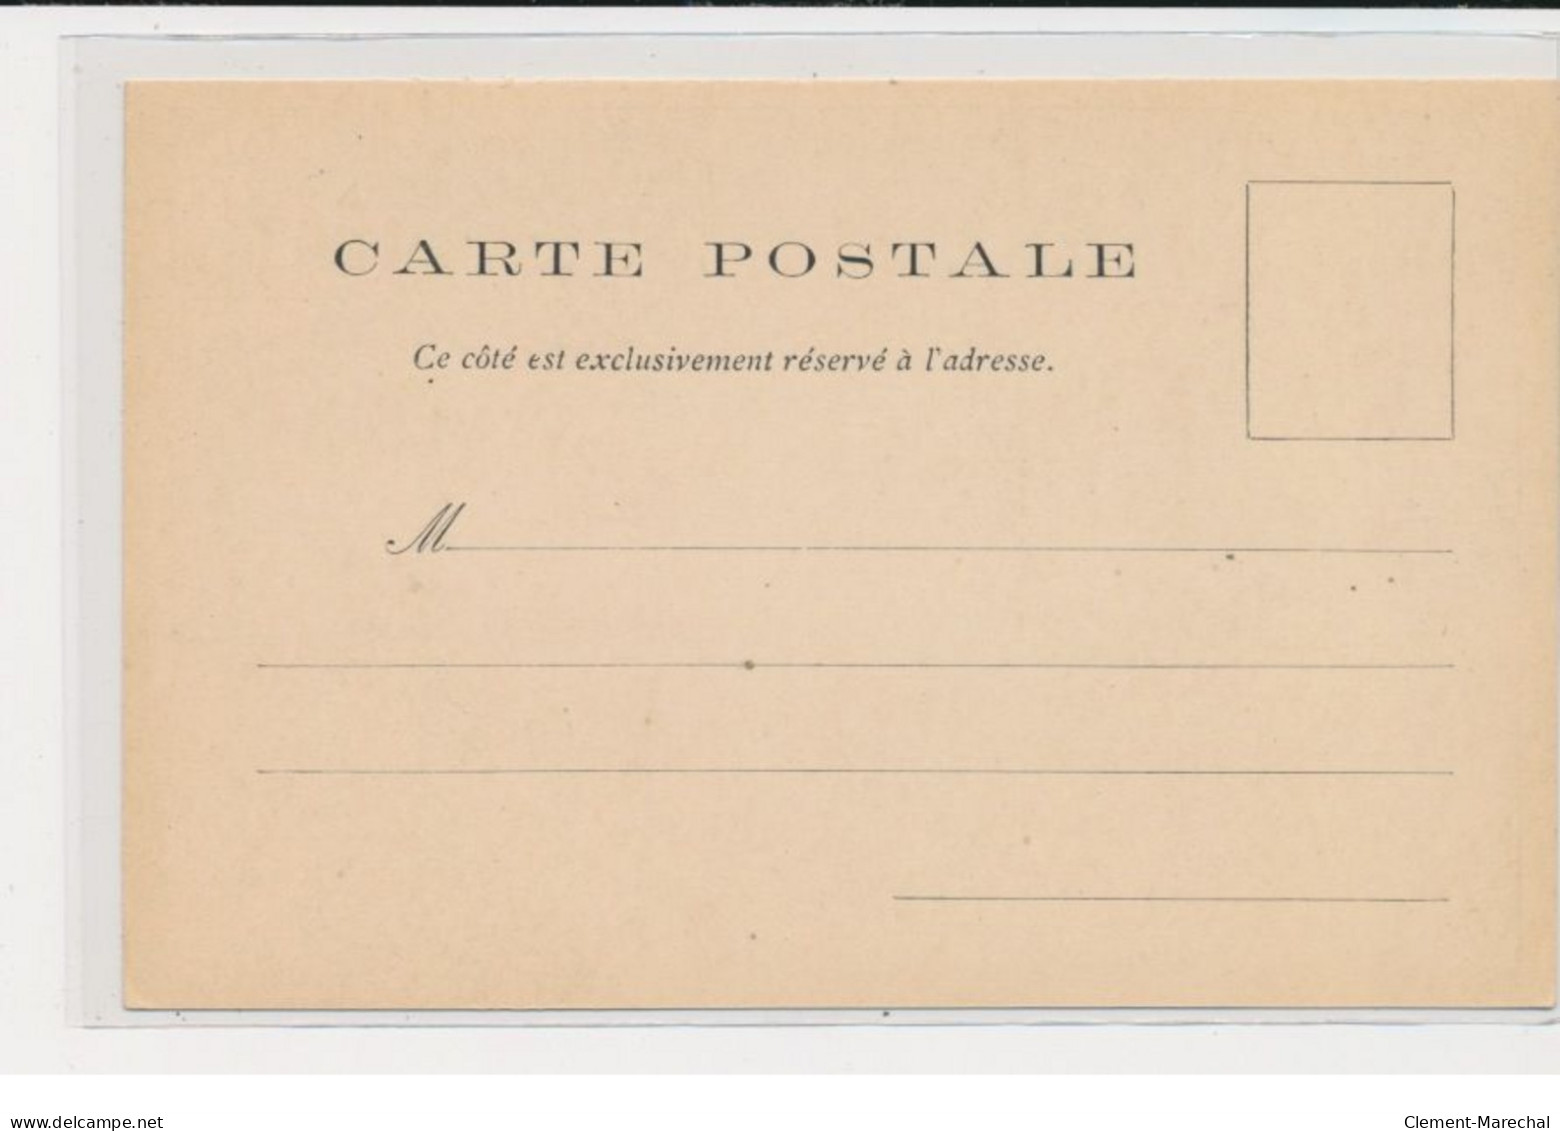 LESSIEUX Louis : série de 10 cartes postales "les Grands Fleuves" avec la pochette complète (Art Nouveau)- très bon état